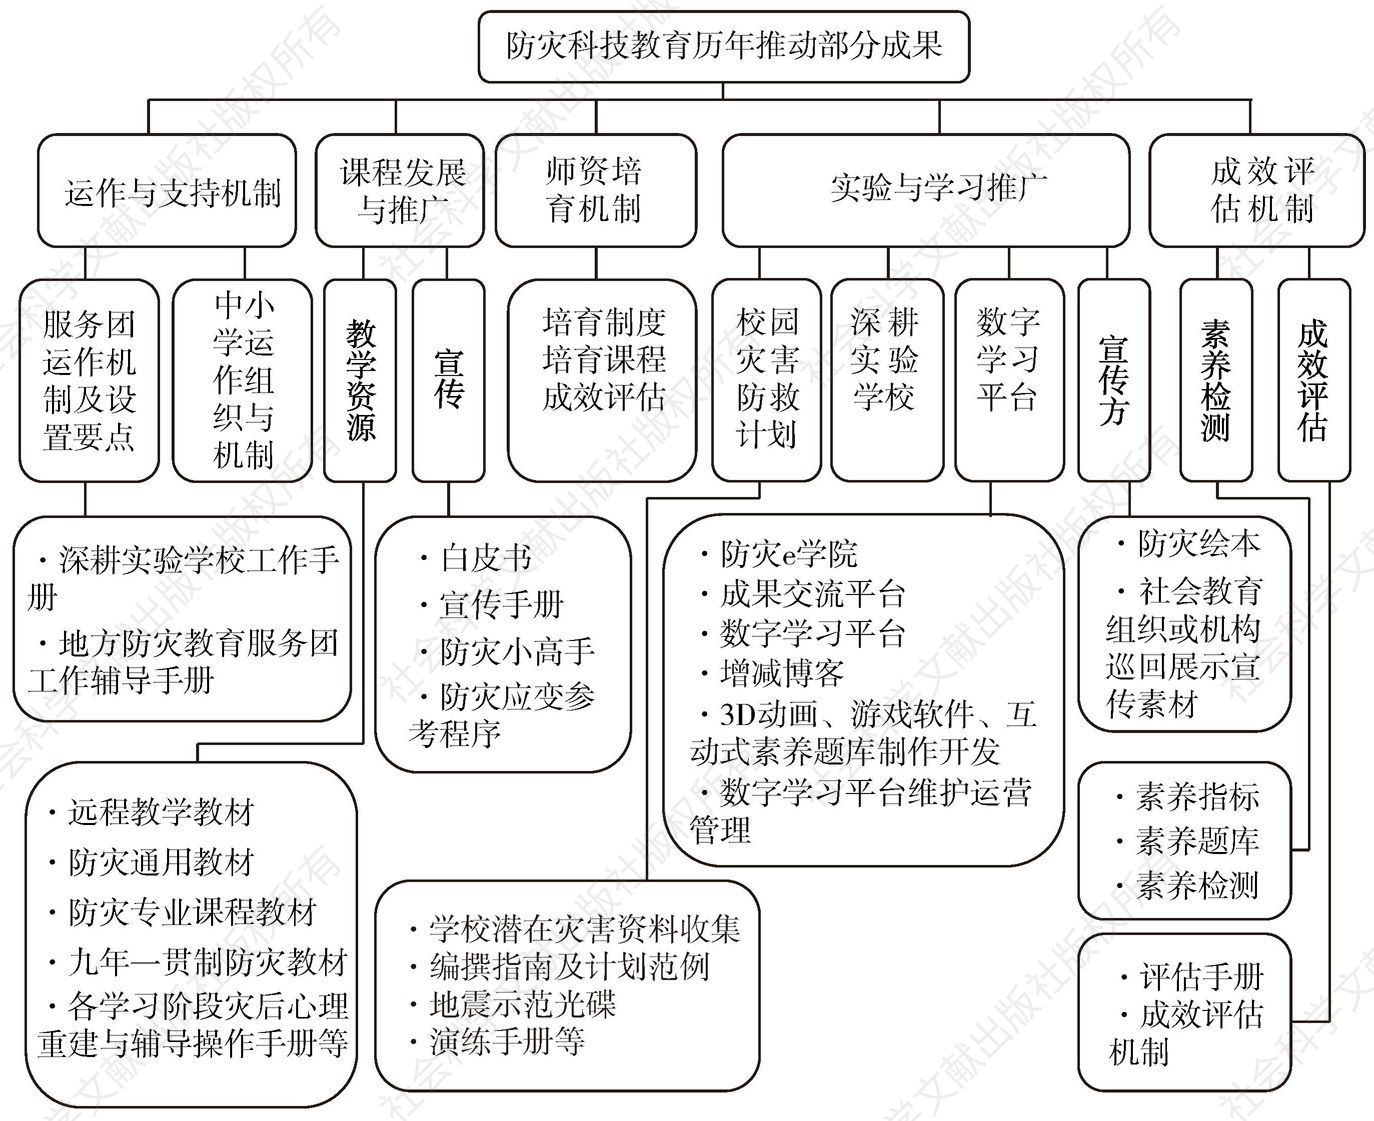 图1-4 台湾防灾科技教育历年推动部分成果